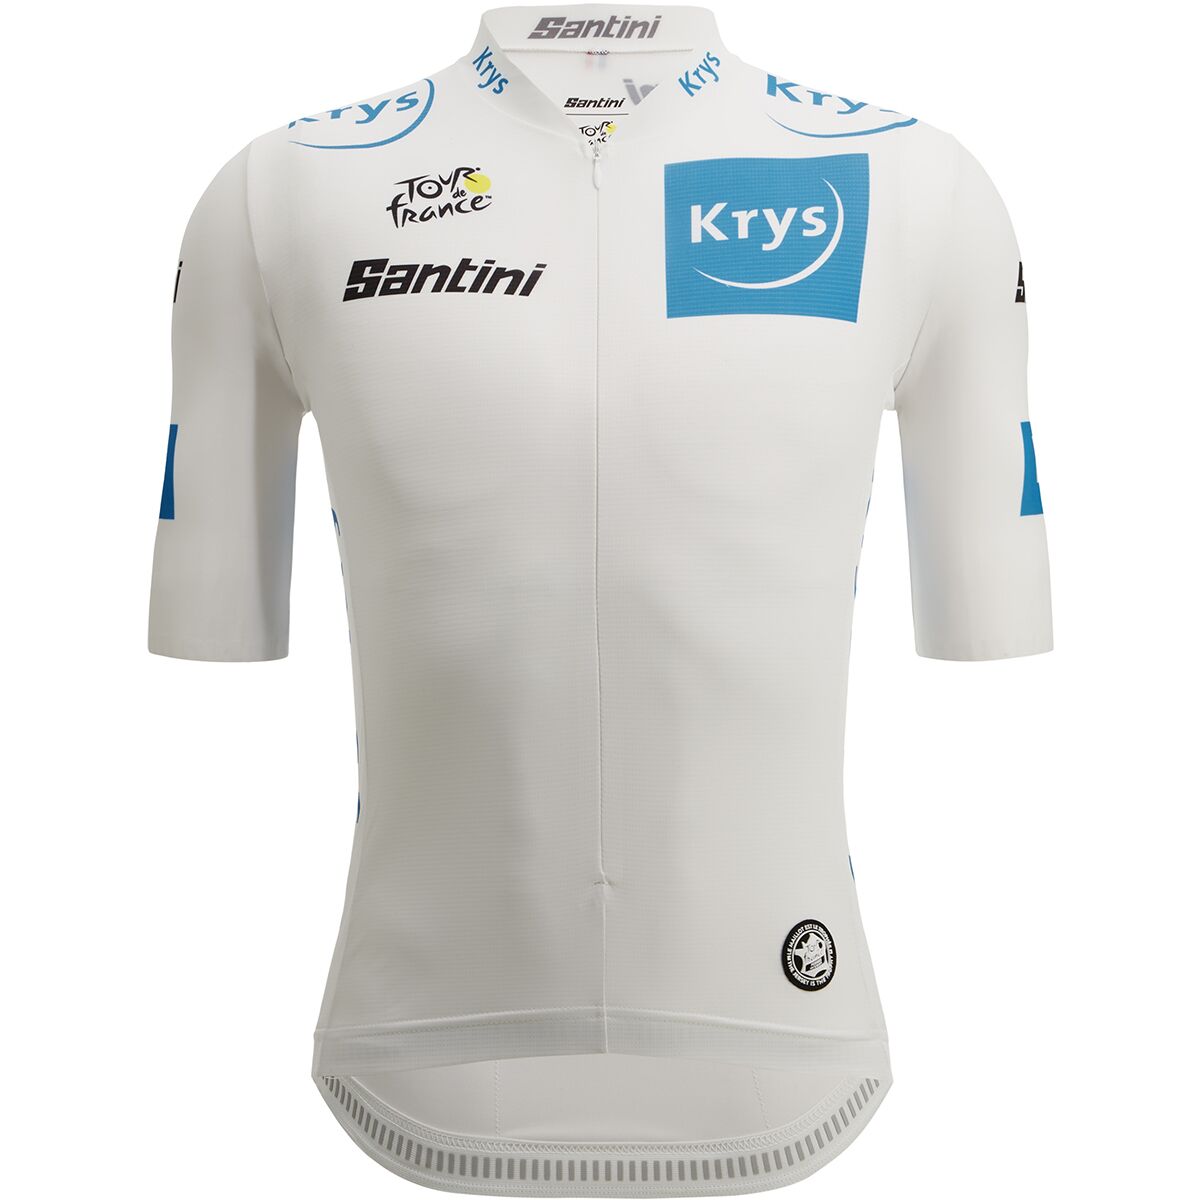 Santini Tour de France Official Team Best Young Rider Jersey - Men's - Bike